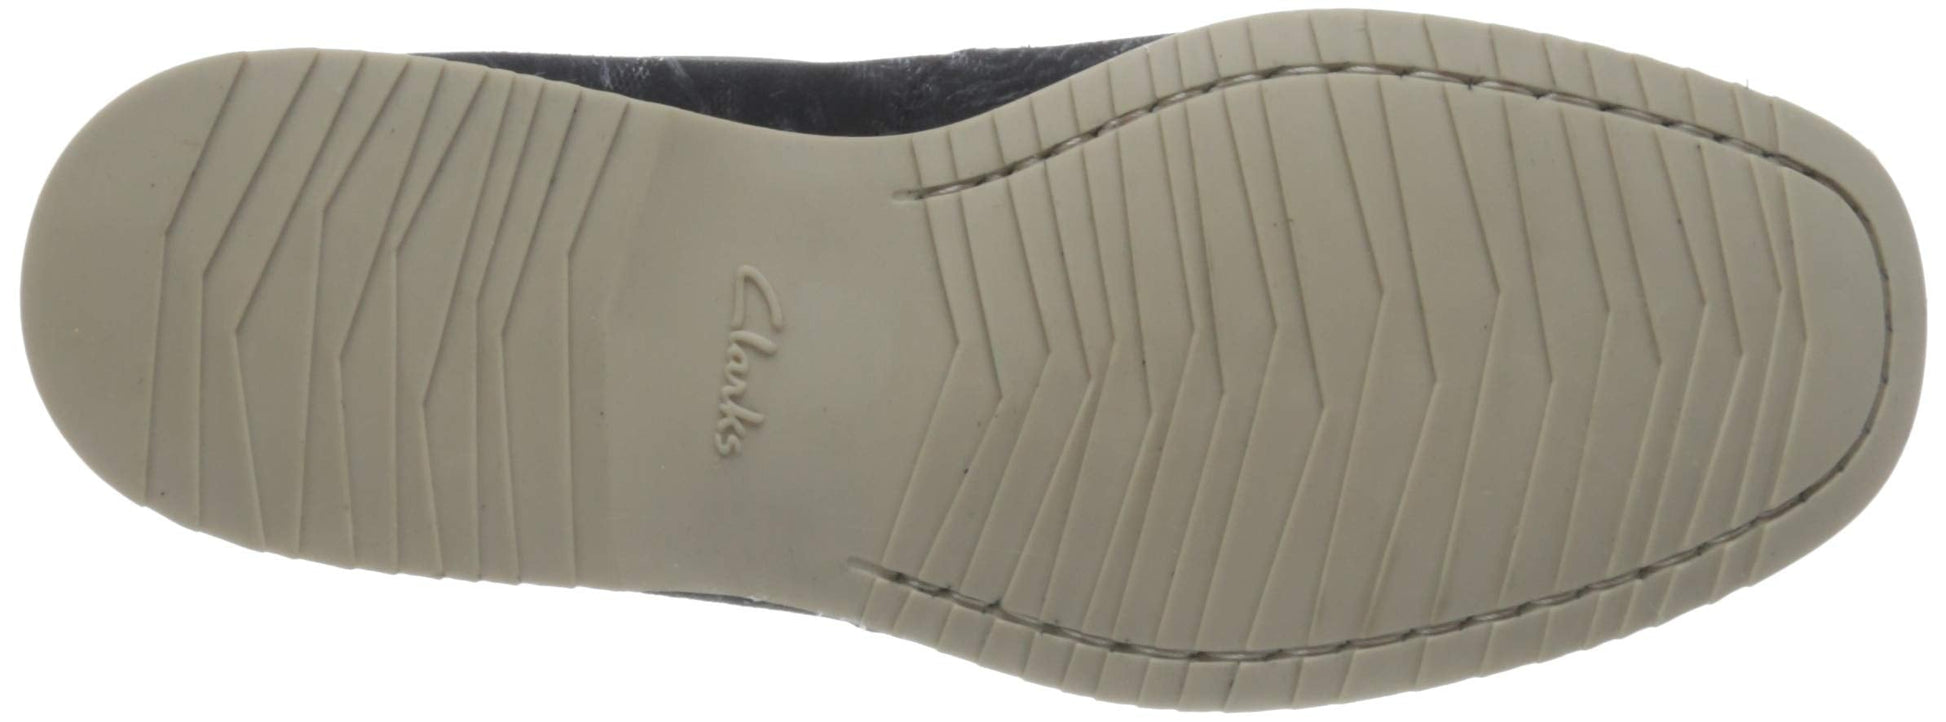 Clarks Men's Navy Suede Boat Shoes (26159473) UK-7 